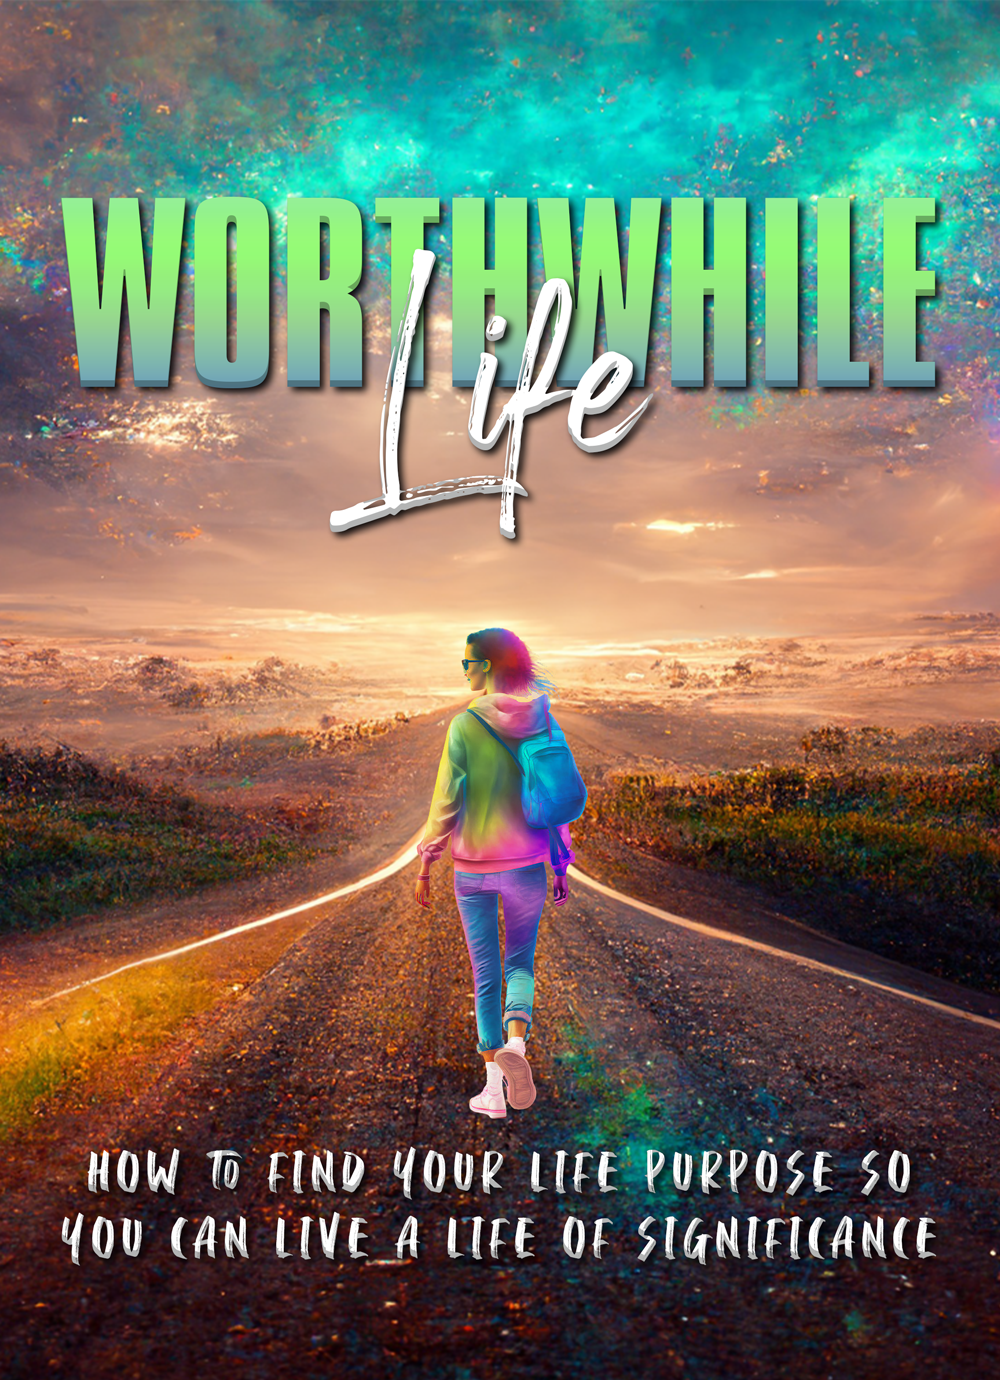 Worthwhile Life